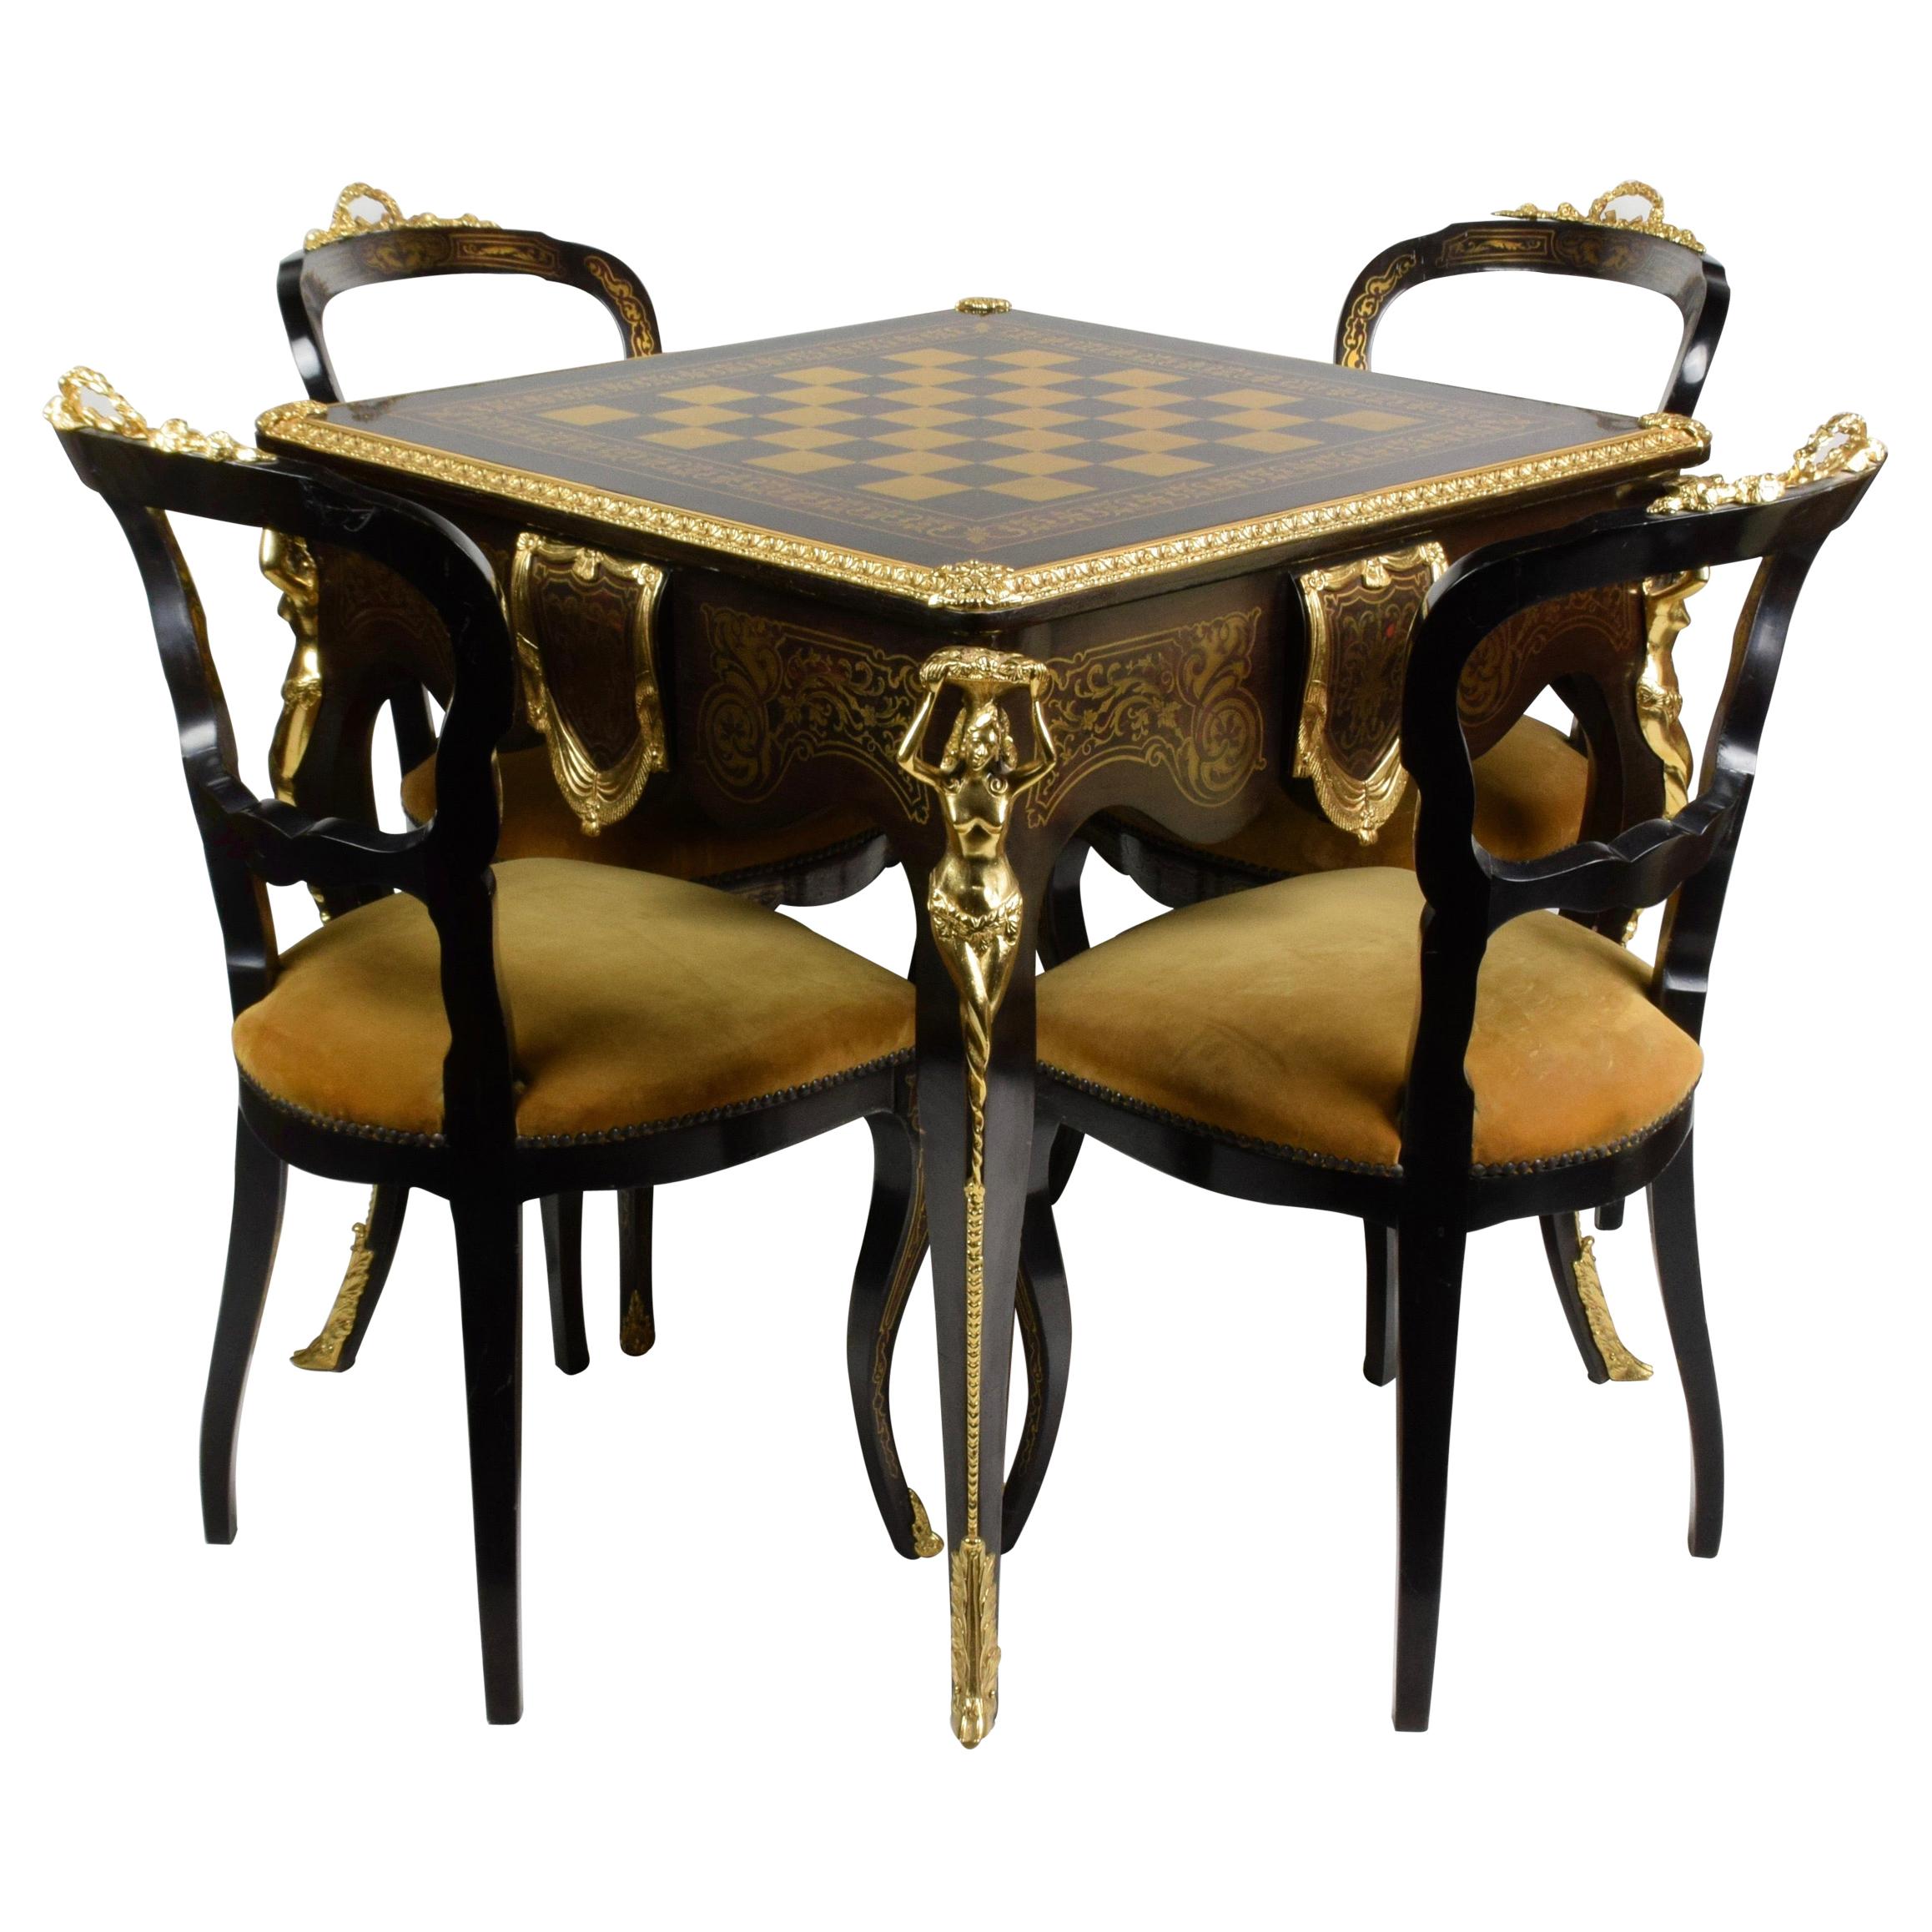 Reproduction artisanale italienne de la table de jeu des années 1960 avec 4 chaises en bois et laiton